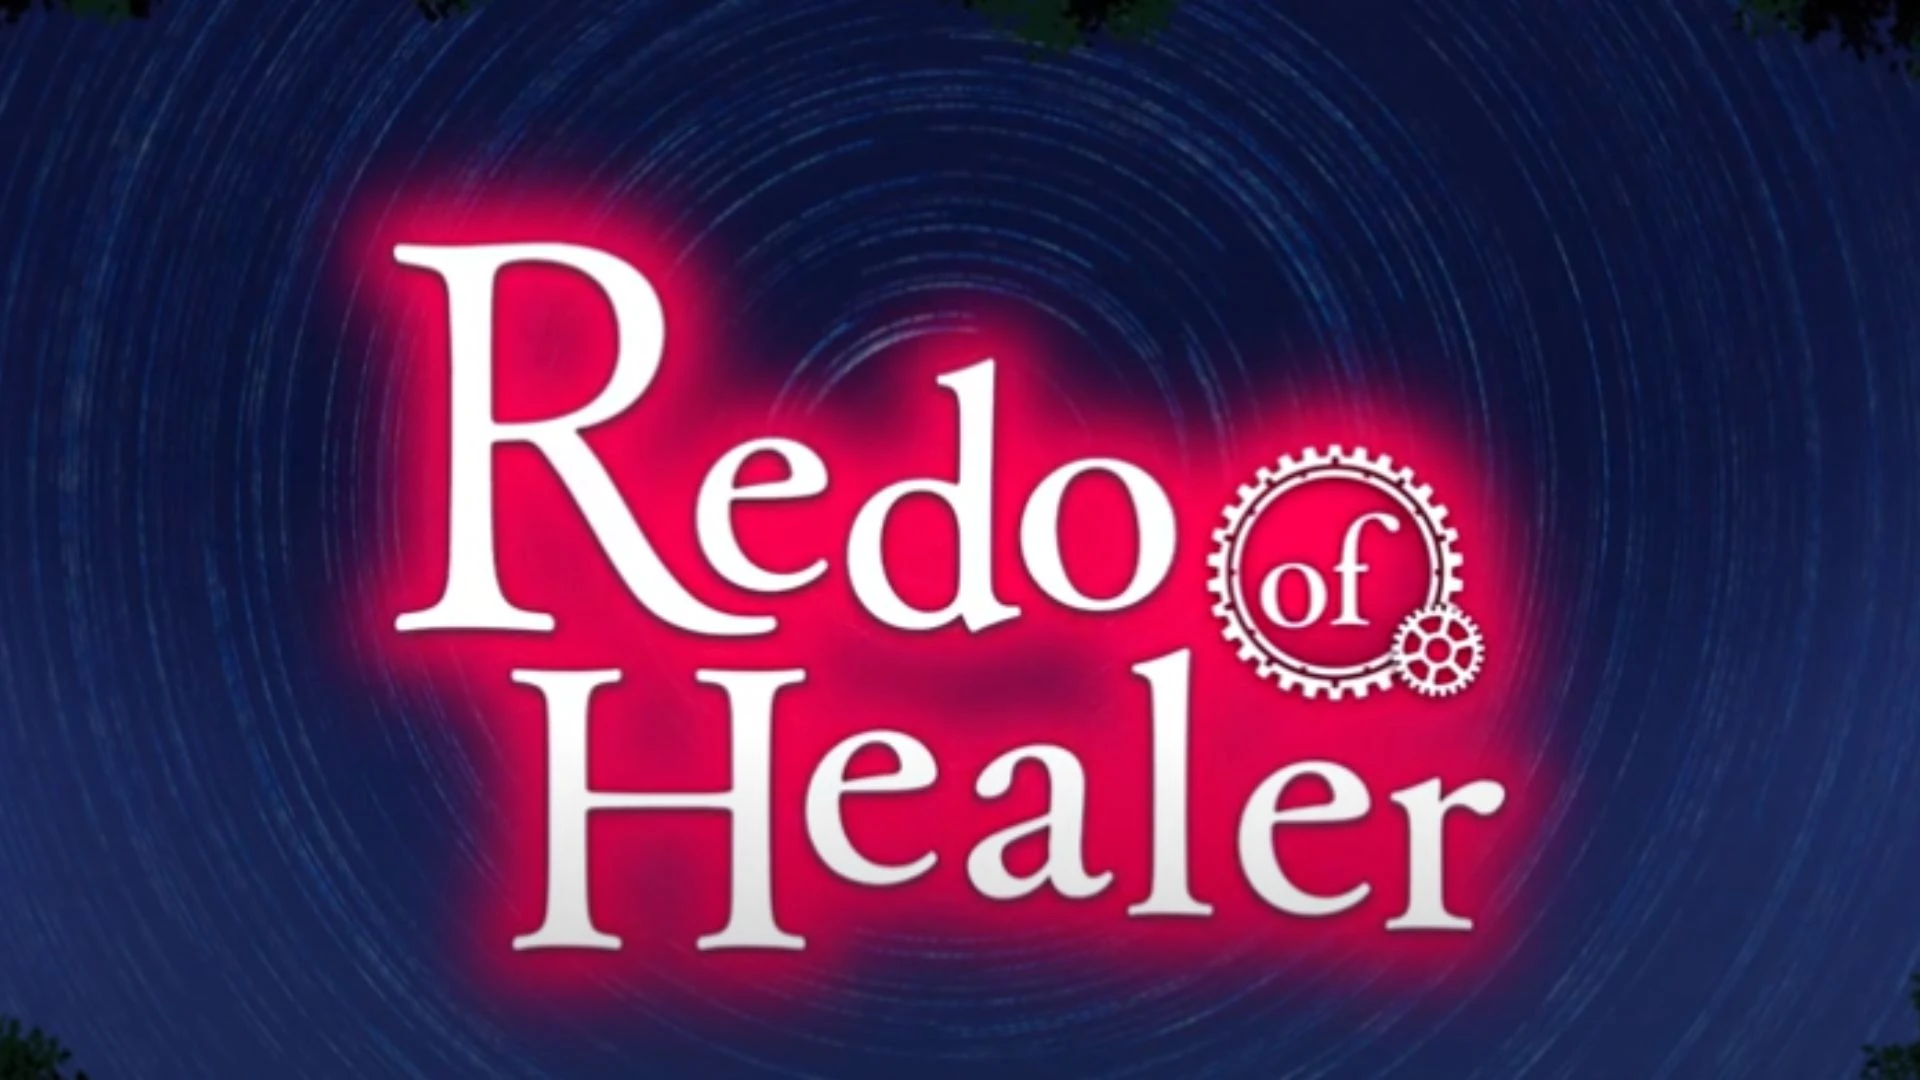 Redo of Healer (TV Series 2021) - Episode list - IMDb